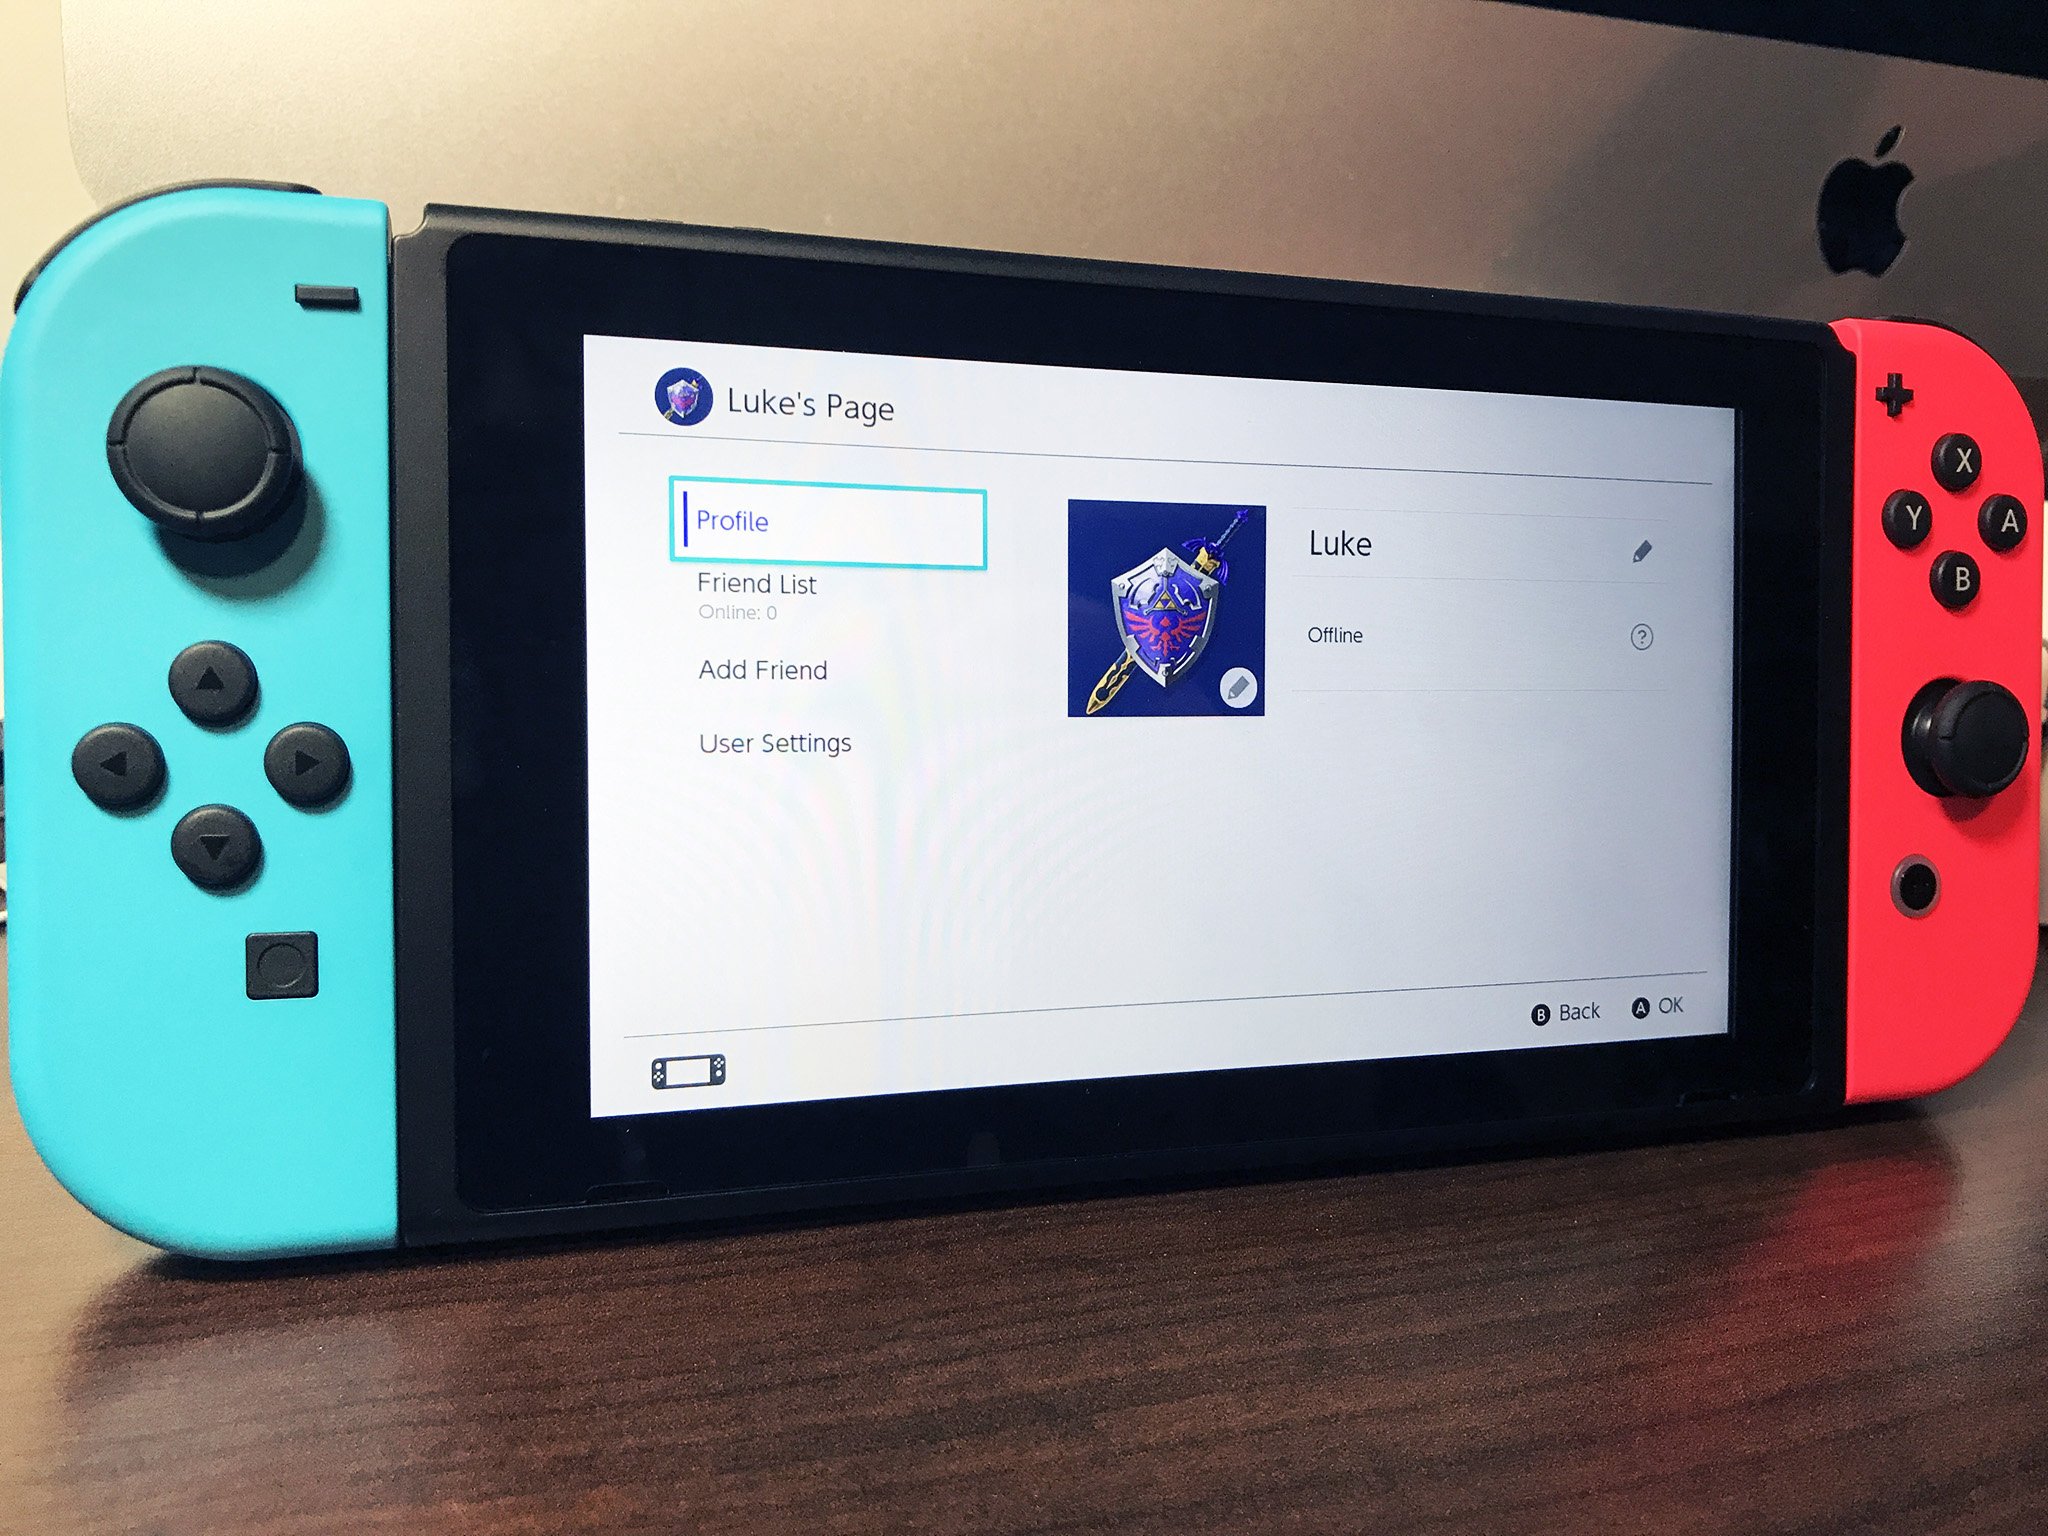 Nintendo Switch : quelles sont les (bonnes) alternatives à Super